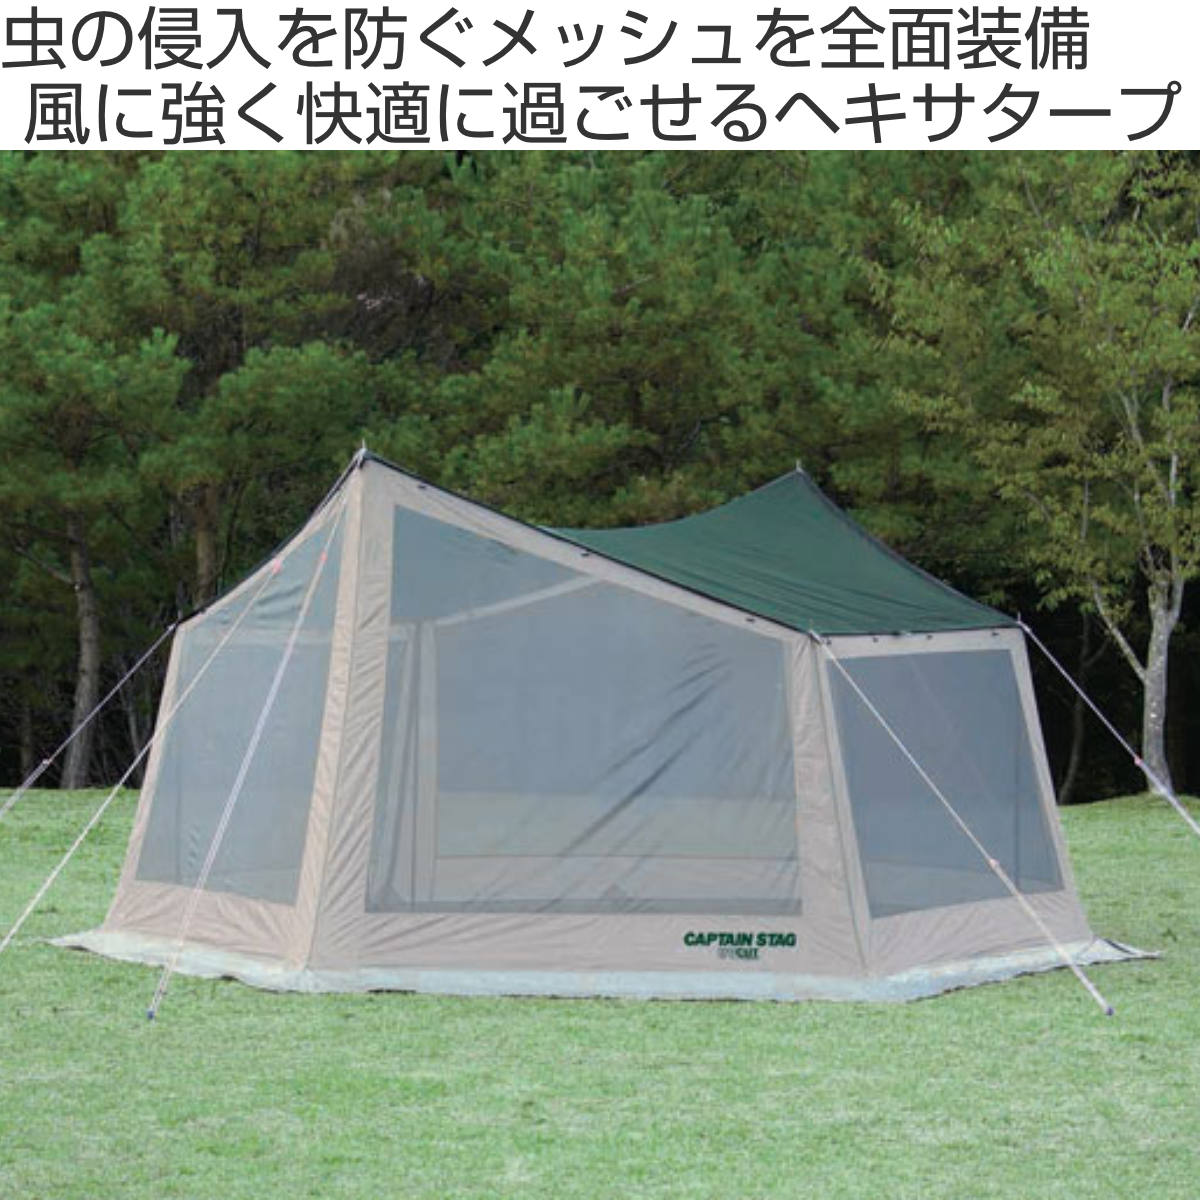 34人 キャンプ用品 タープテント サンシェード - テント・タープ